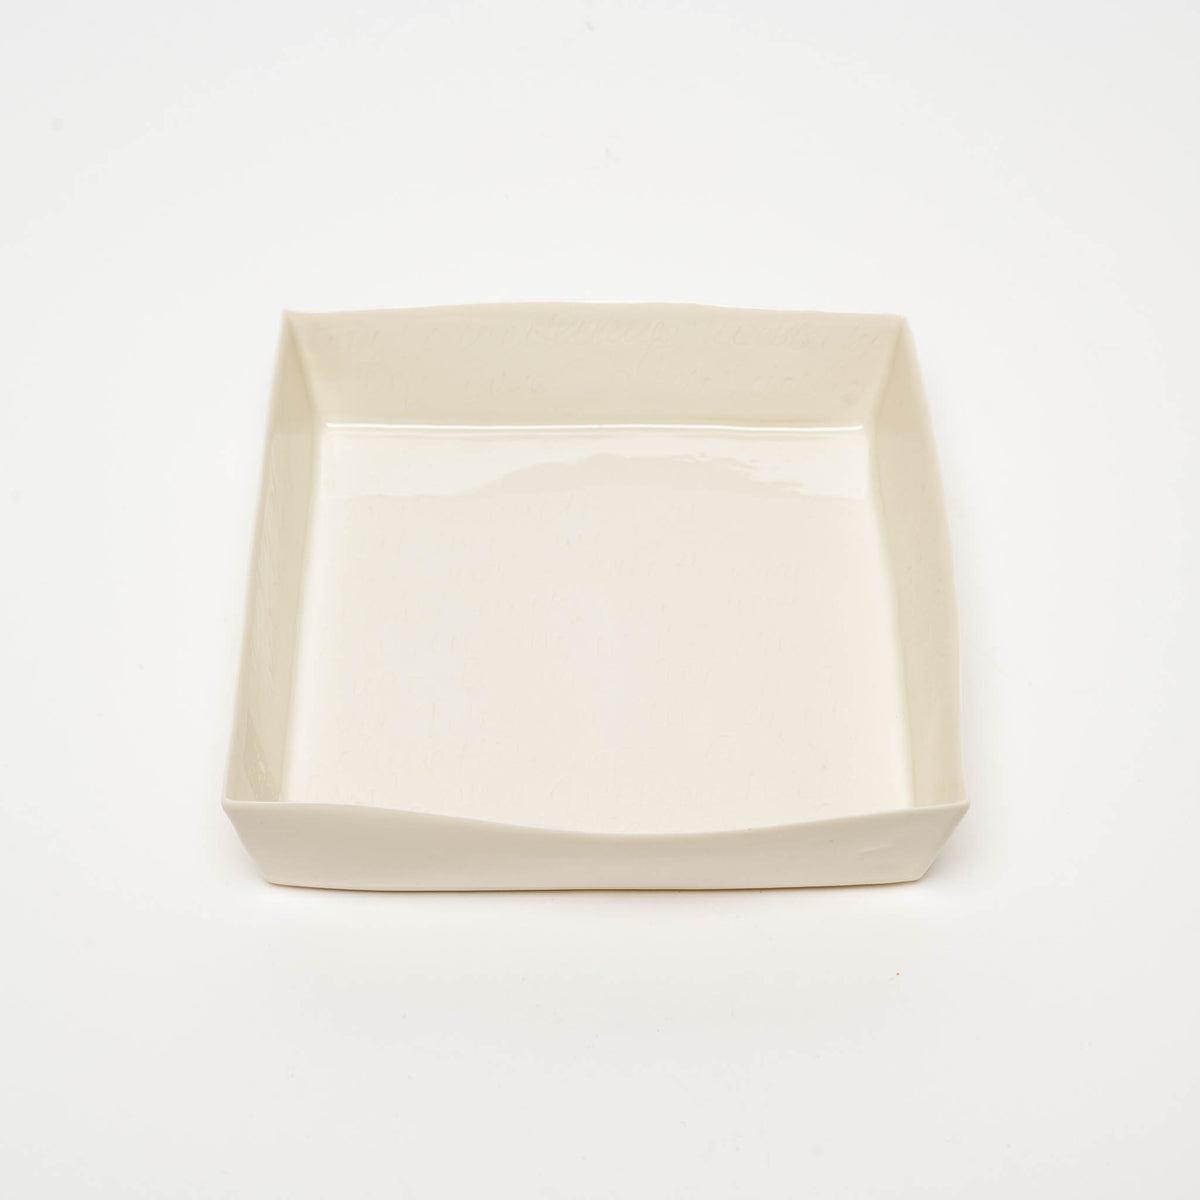 Porcelain box 20 x 20 cm